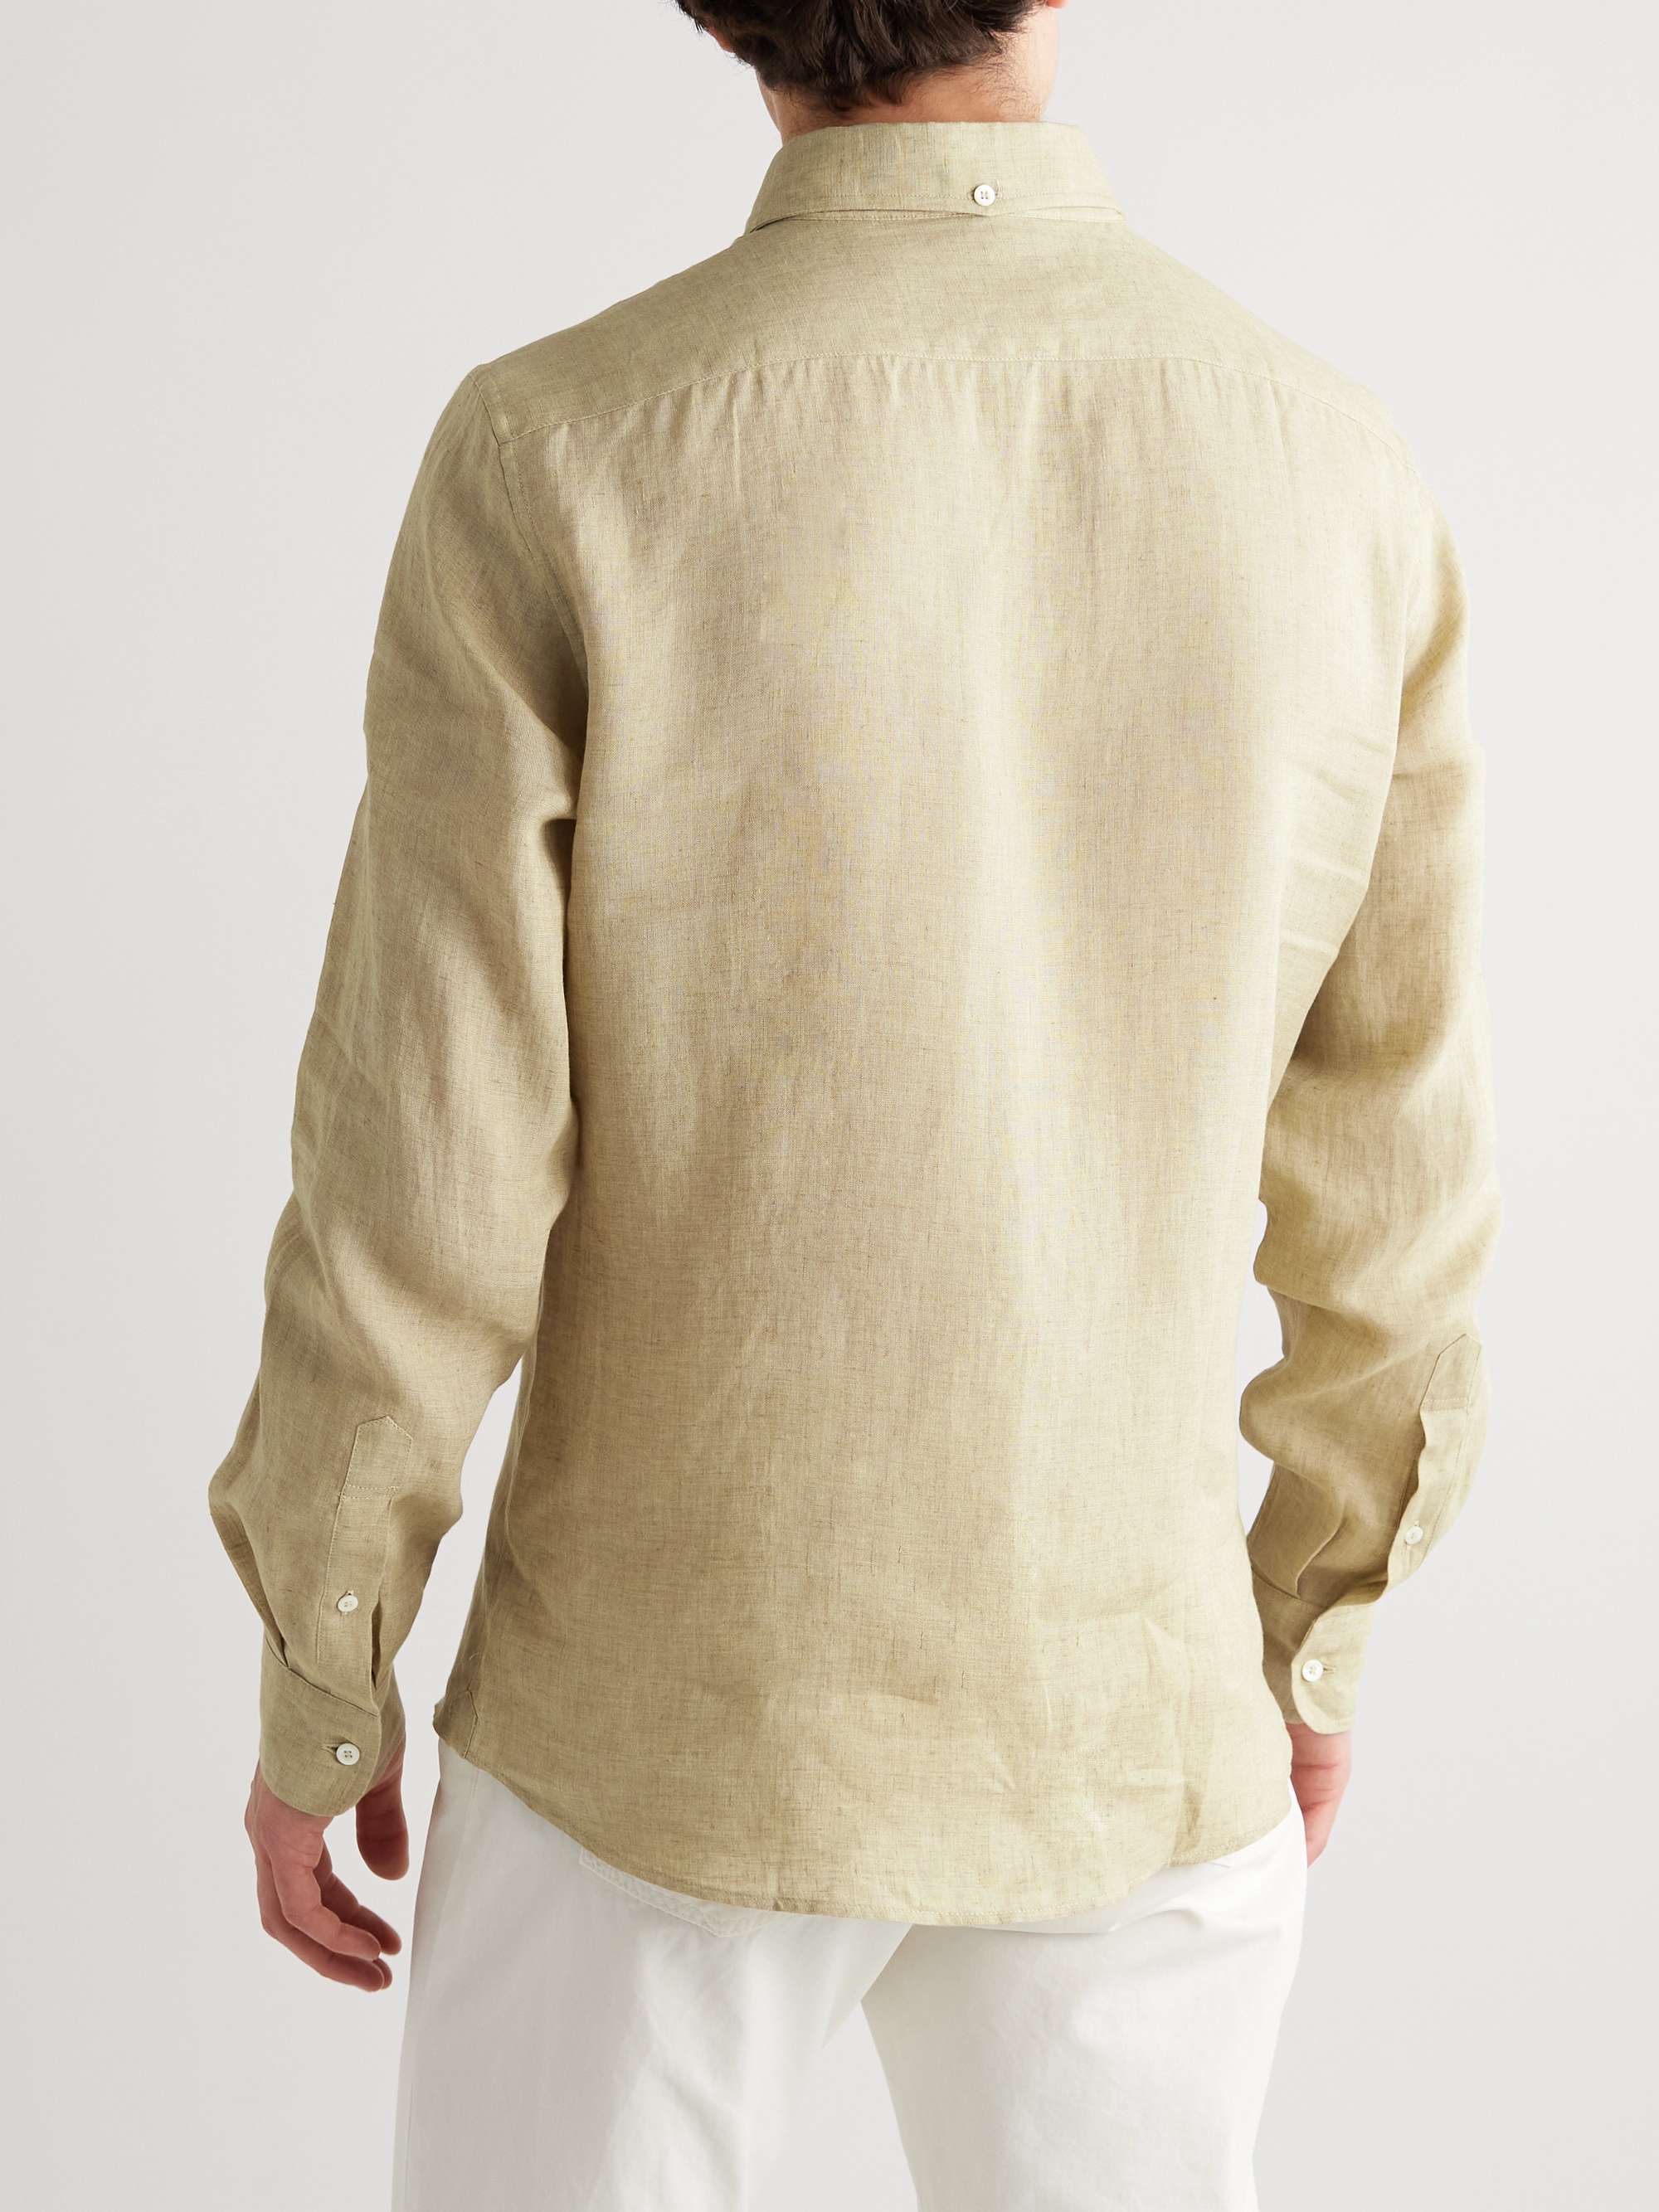 BRUNELLO CUCINELLI Linen Shirt for Men | MR PORTER